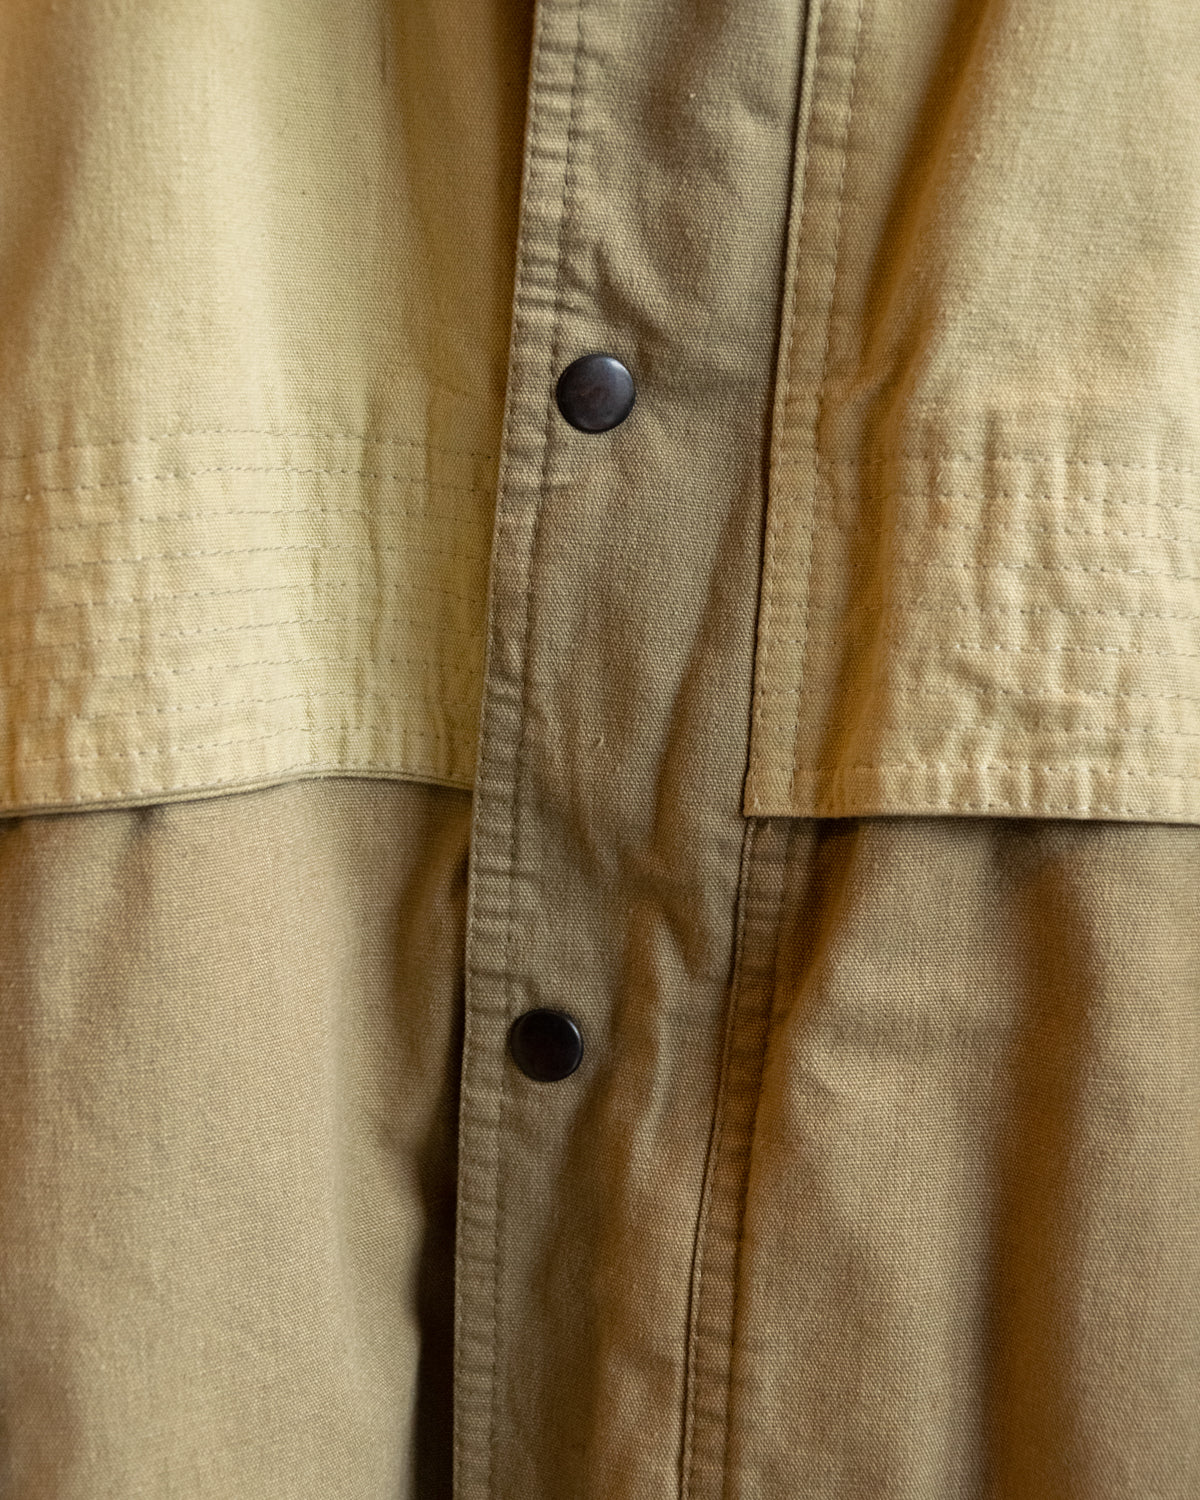 Vintage Garry Austin Sage Panelled Jacket